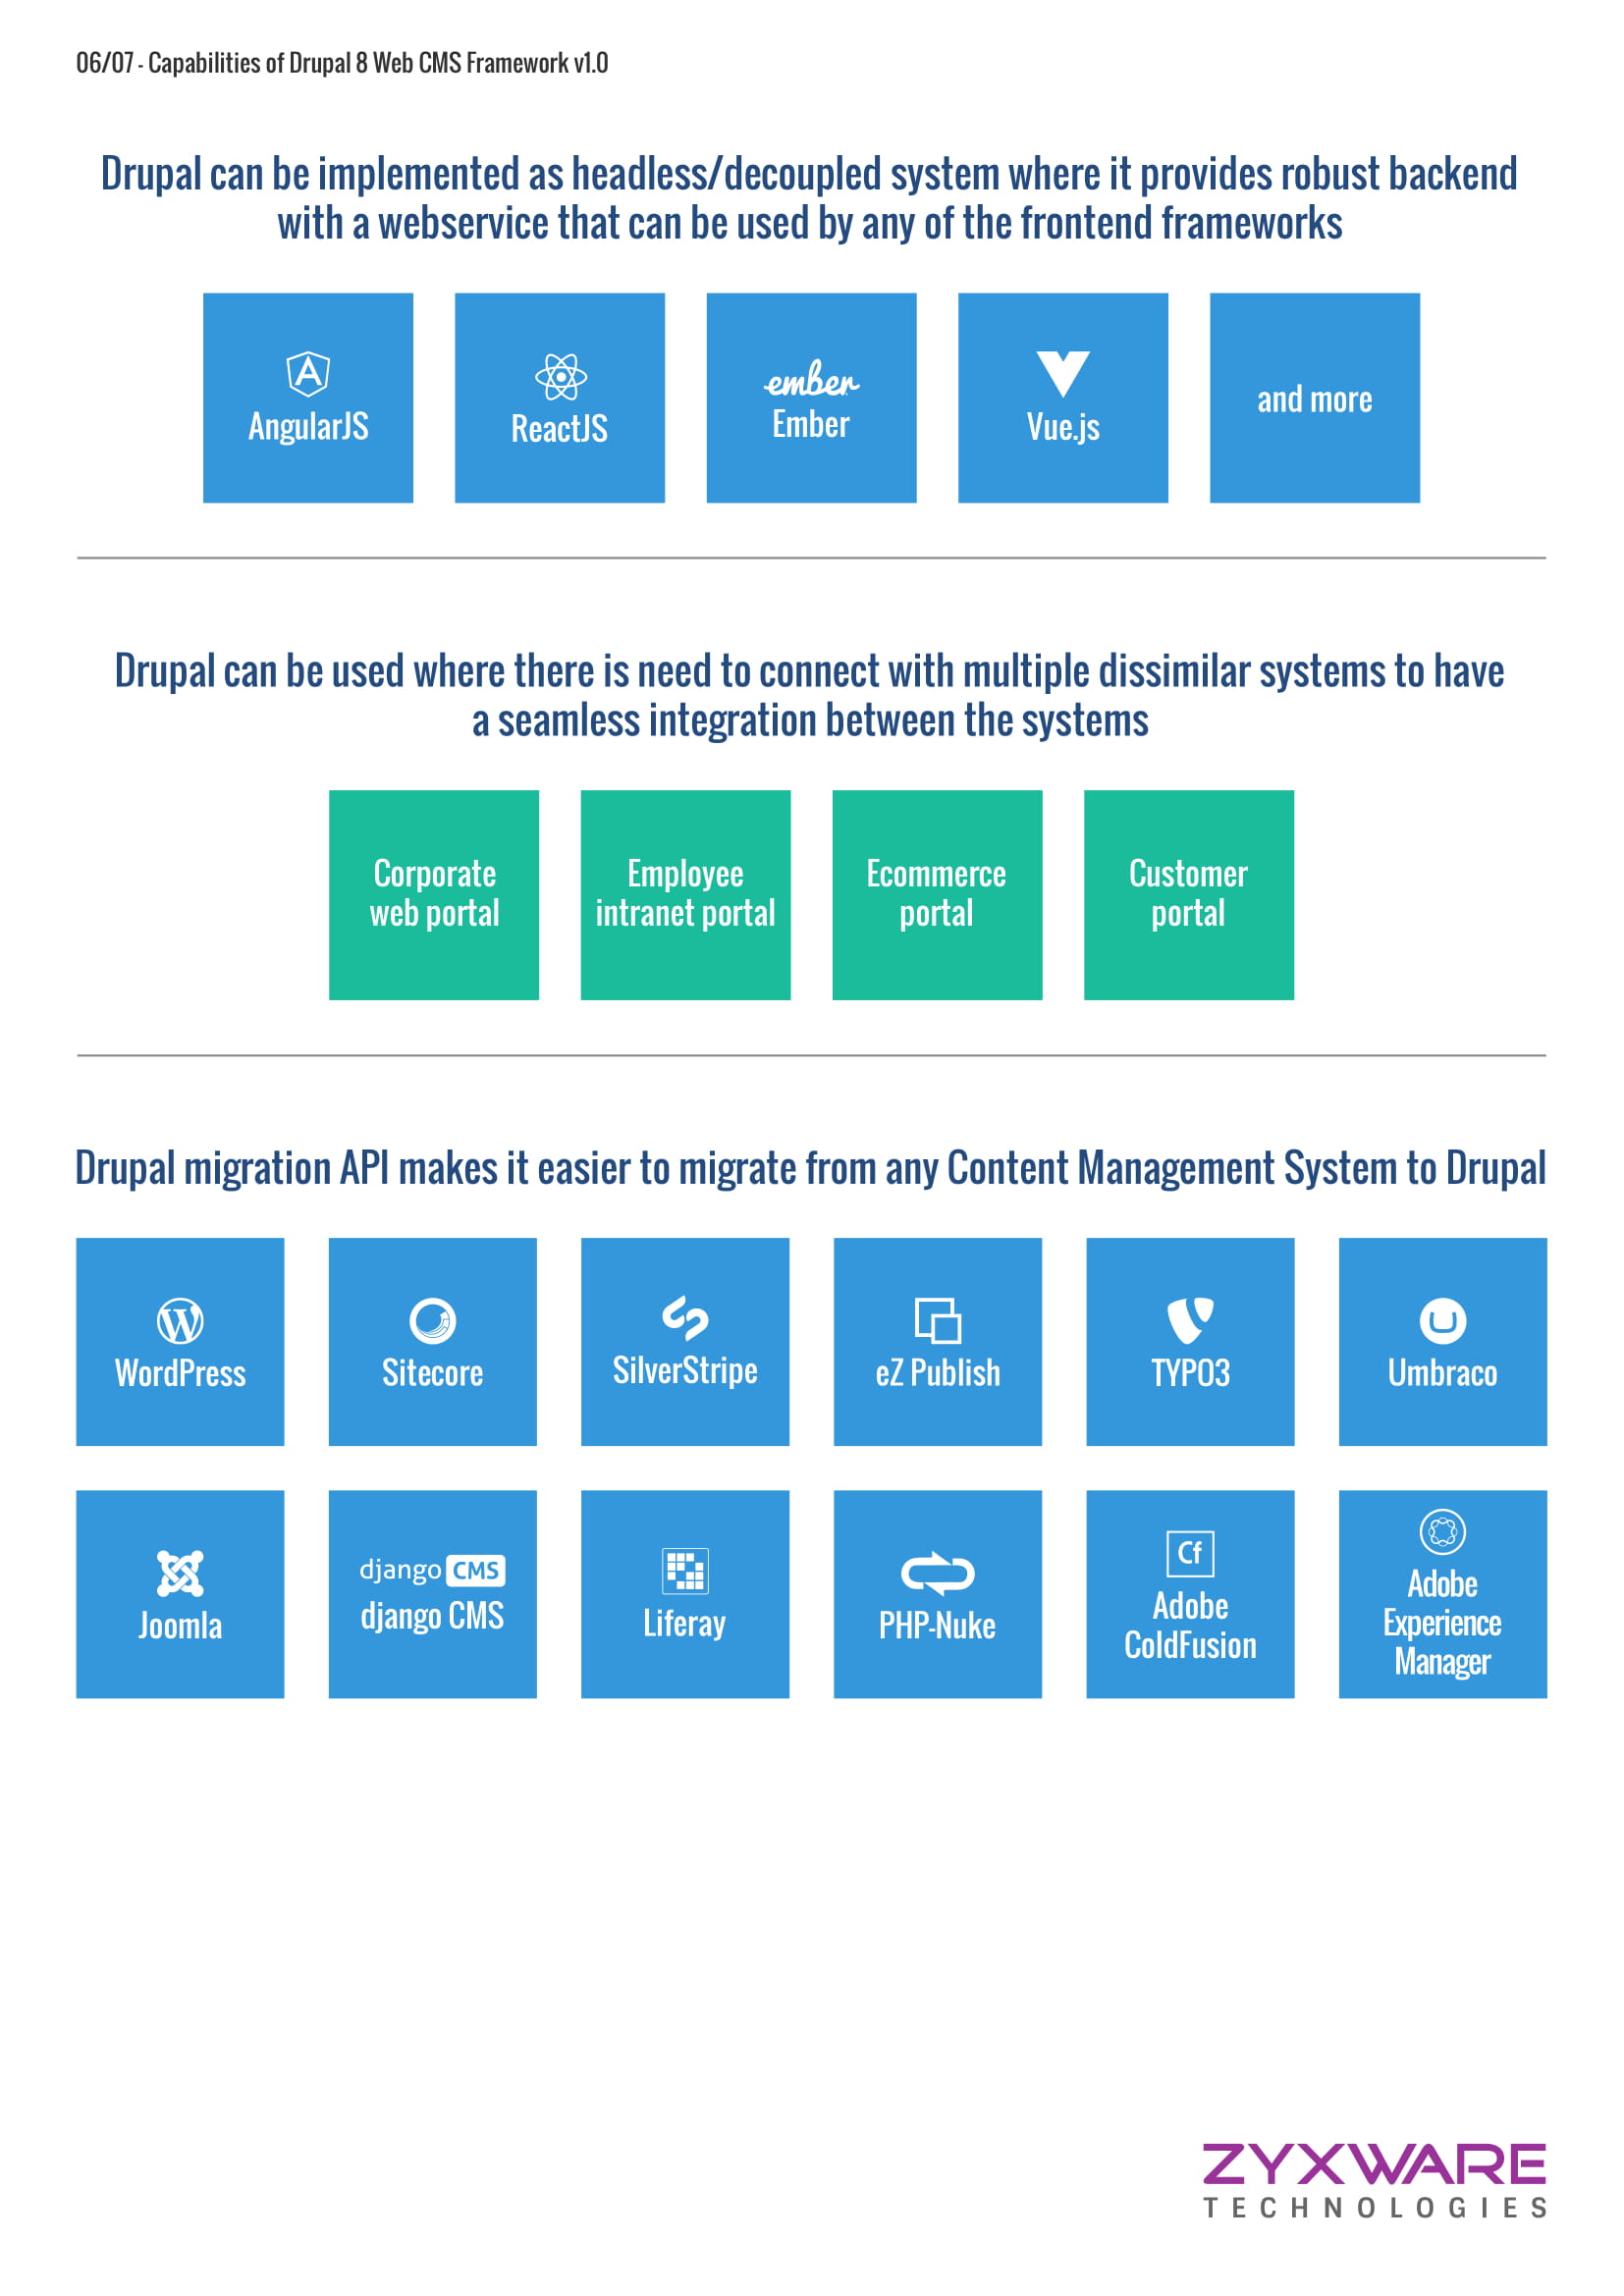 Drupal-Capabilities-infographic-v1.3-6.jpg